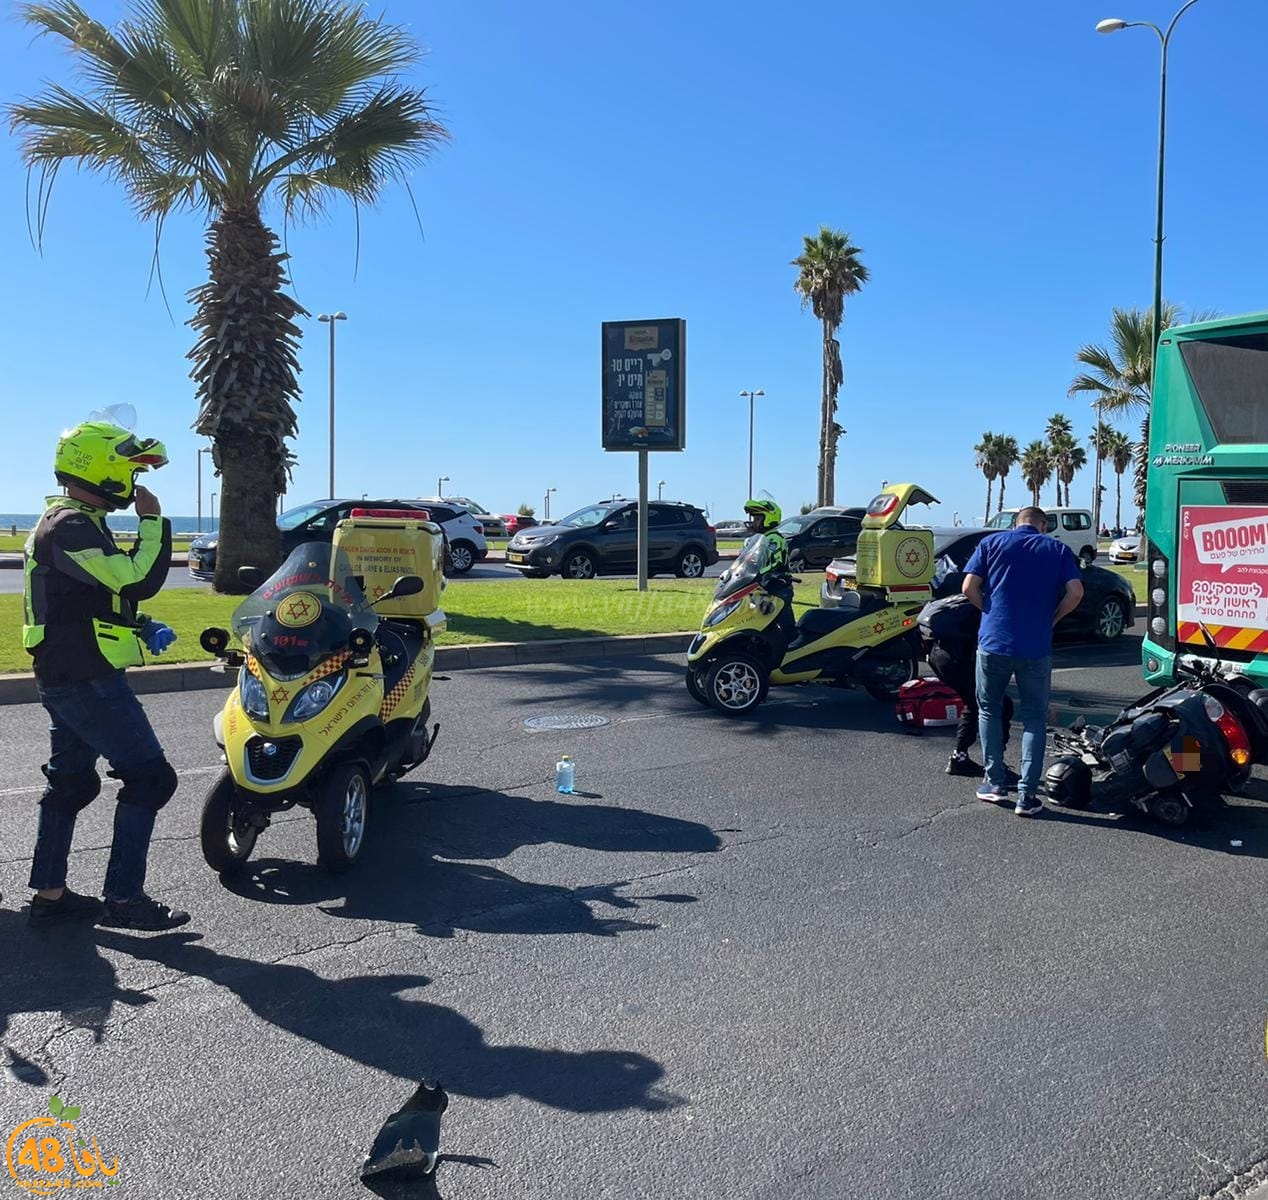  يافا: اصابة متوسطة لراكب دراجة نارية بحادث طرق 